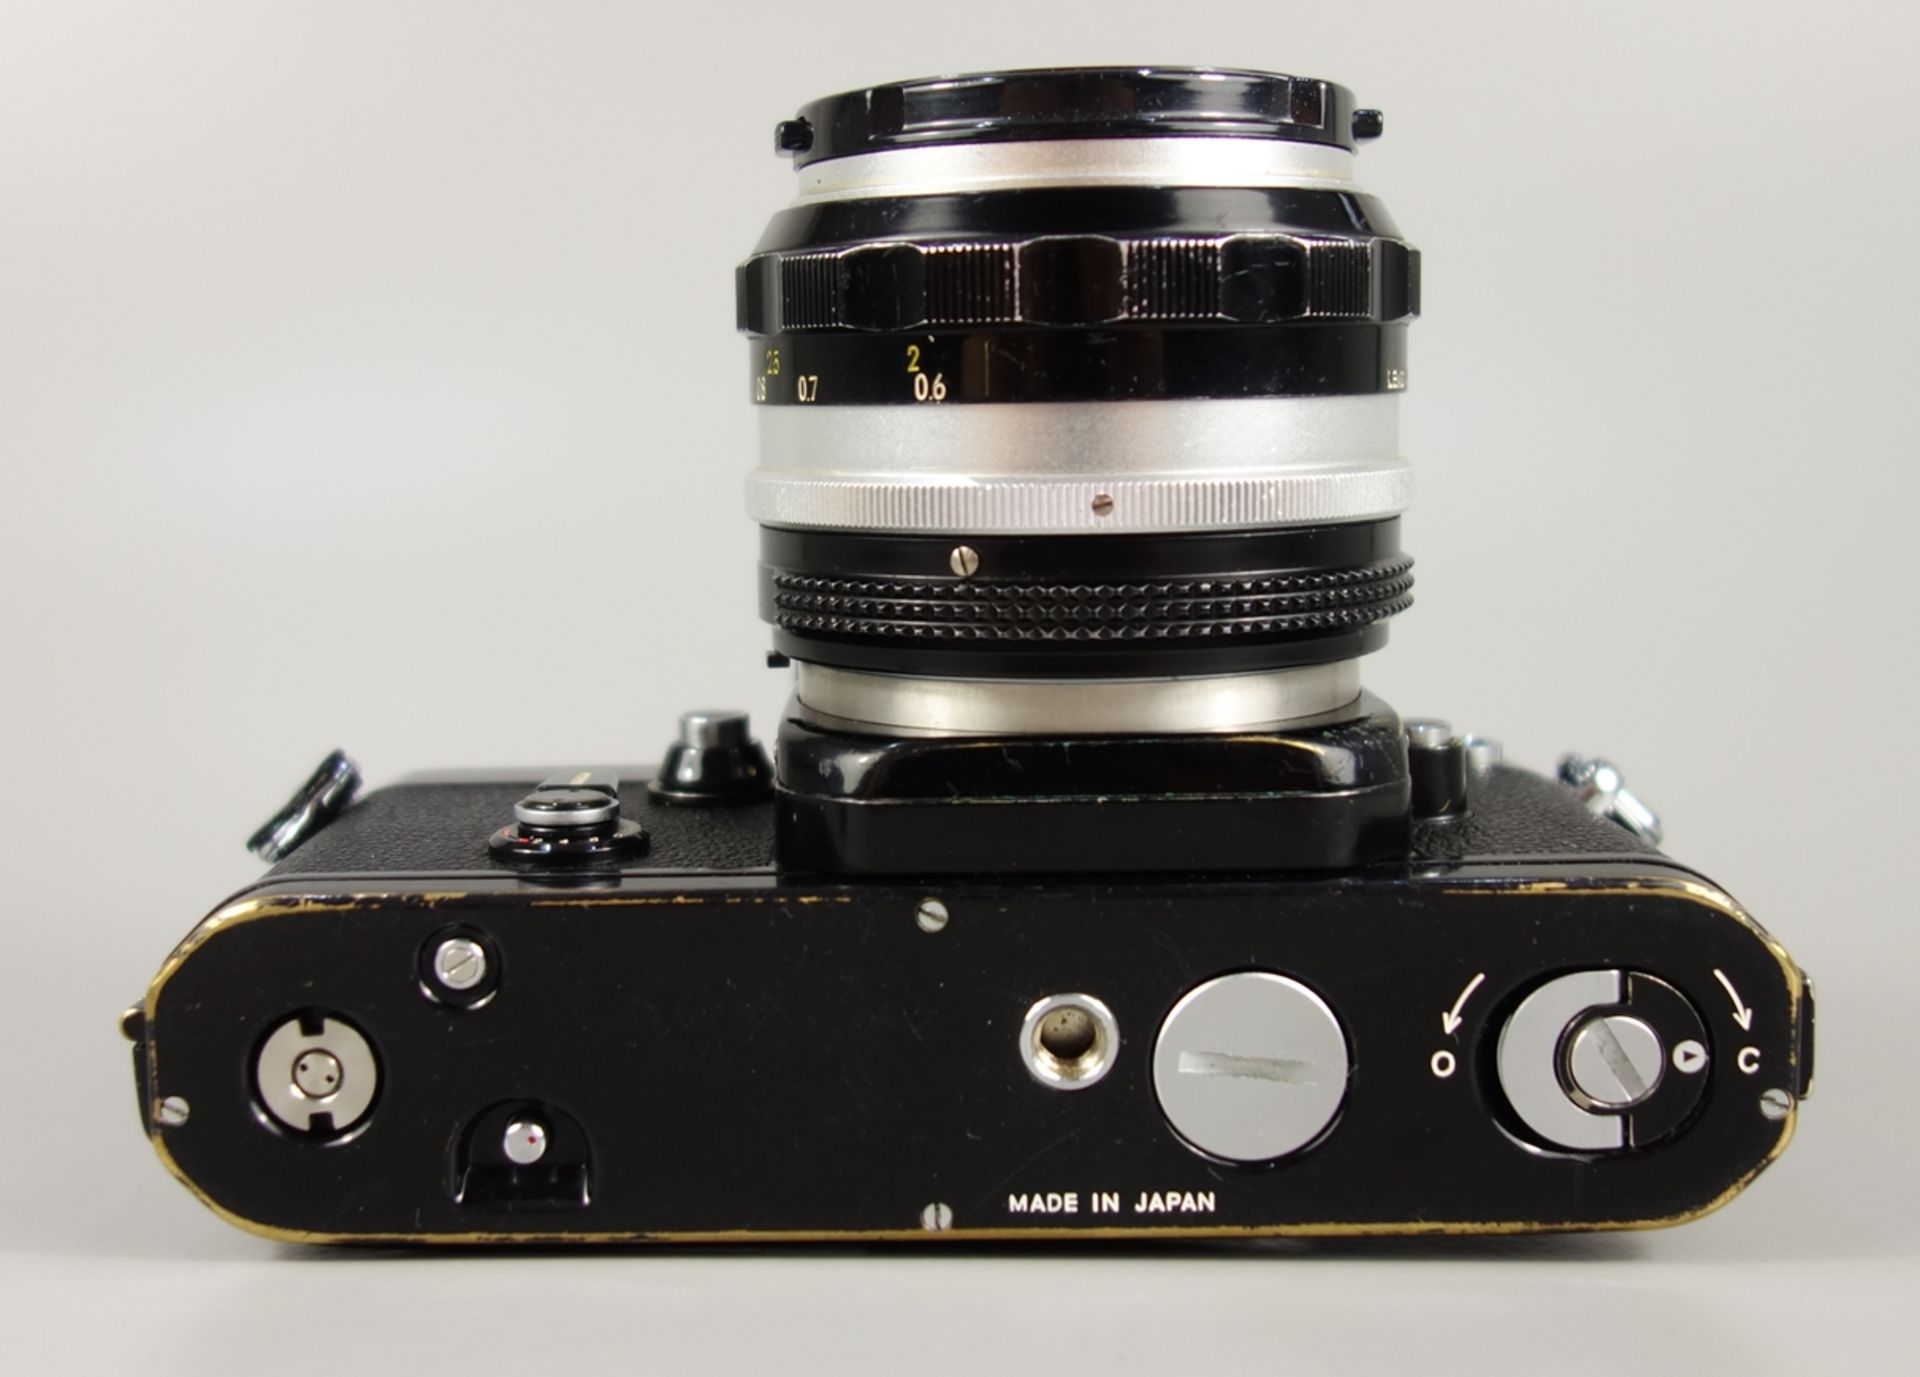 Nikon F2 Photomic, Spiegelreflexkamera, schwarz, 1970er Jahre, Serien-Nr. 7240495, mit Objektiv - Bild 4 aus 5